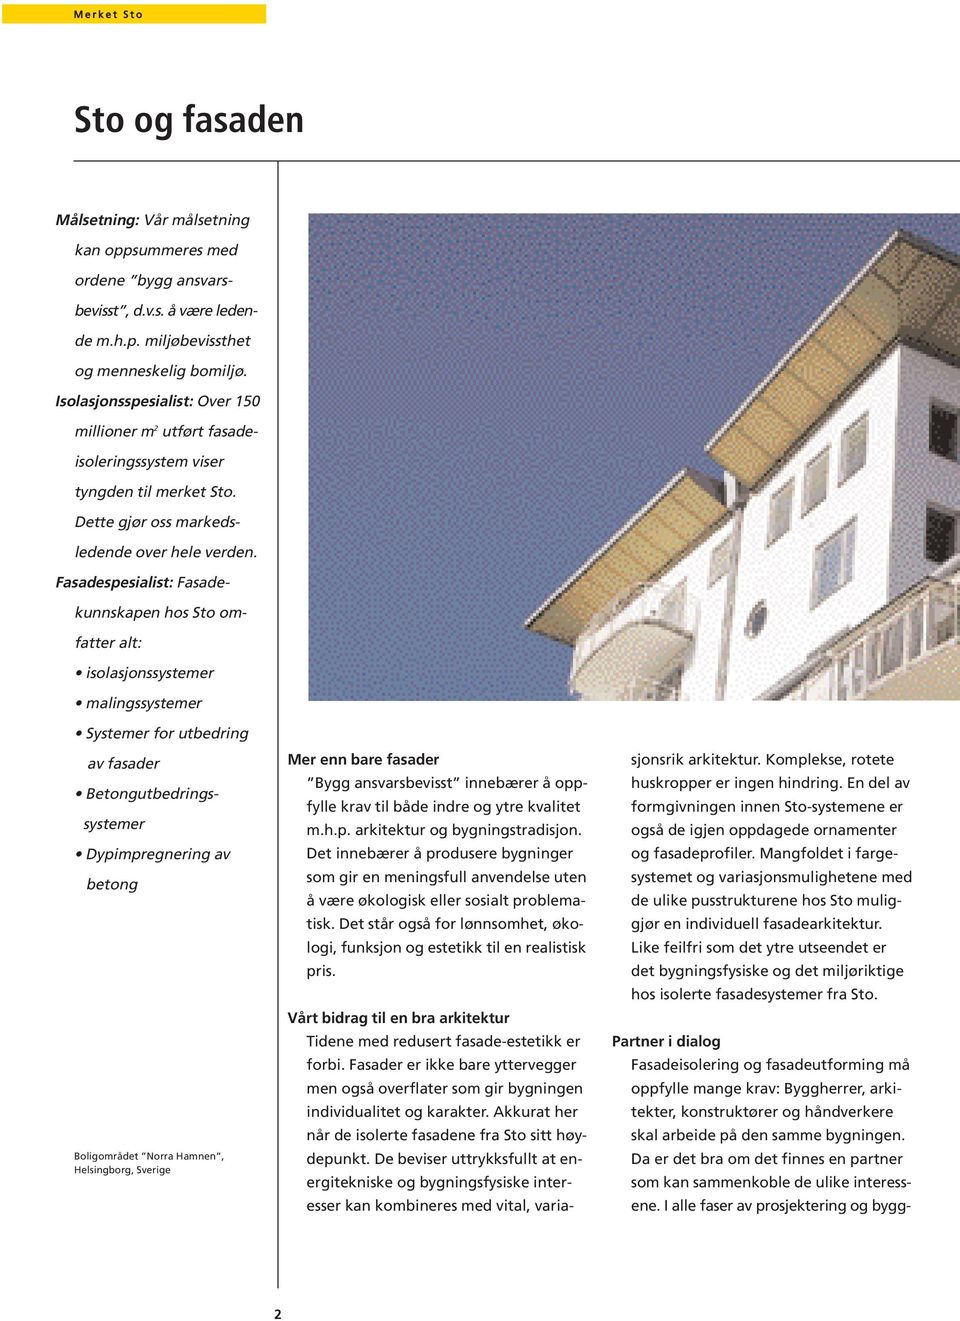 Fasadespesialist: Fasadekunnskapen hos Sto omfatter alt: isolasjonssystemer malingssystemer Systemer for utbedring av fasader Betongutbedringssystemer Dypimpregnering av betong Boligområdet Norra